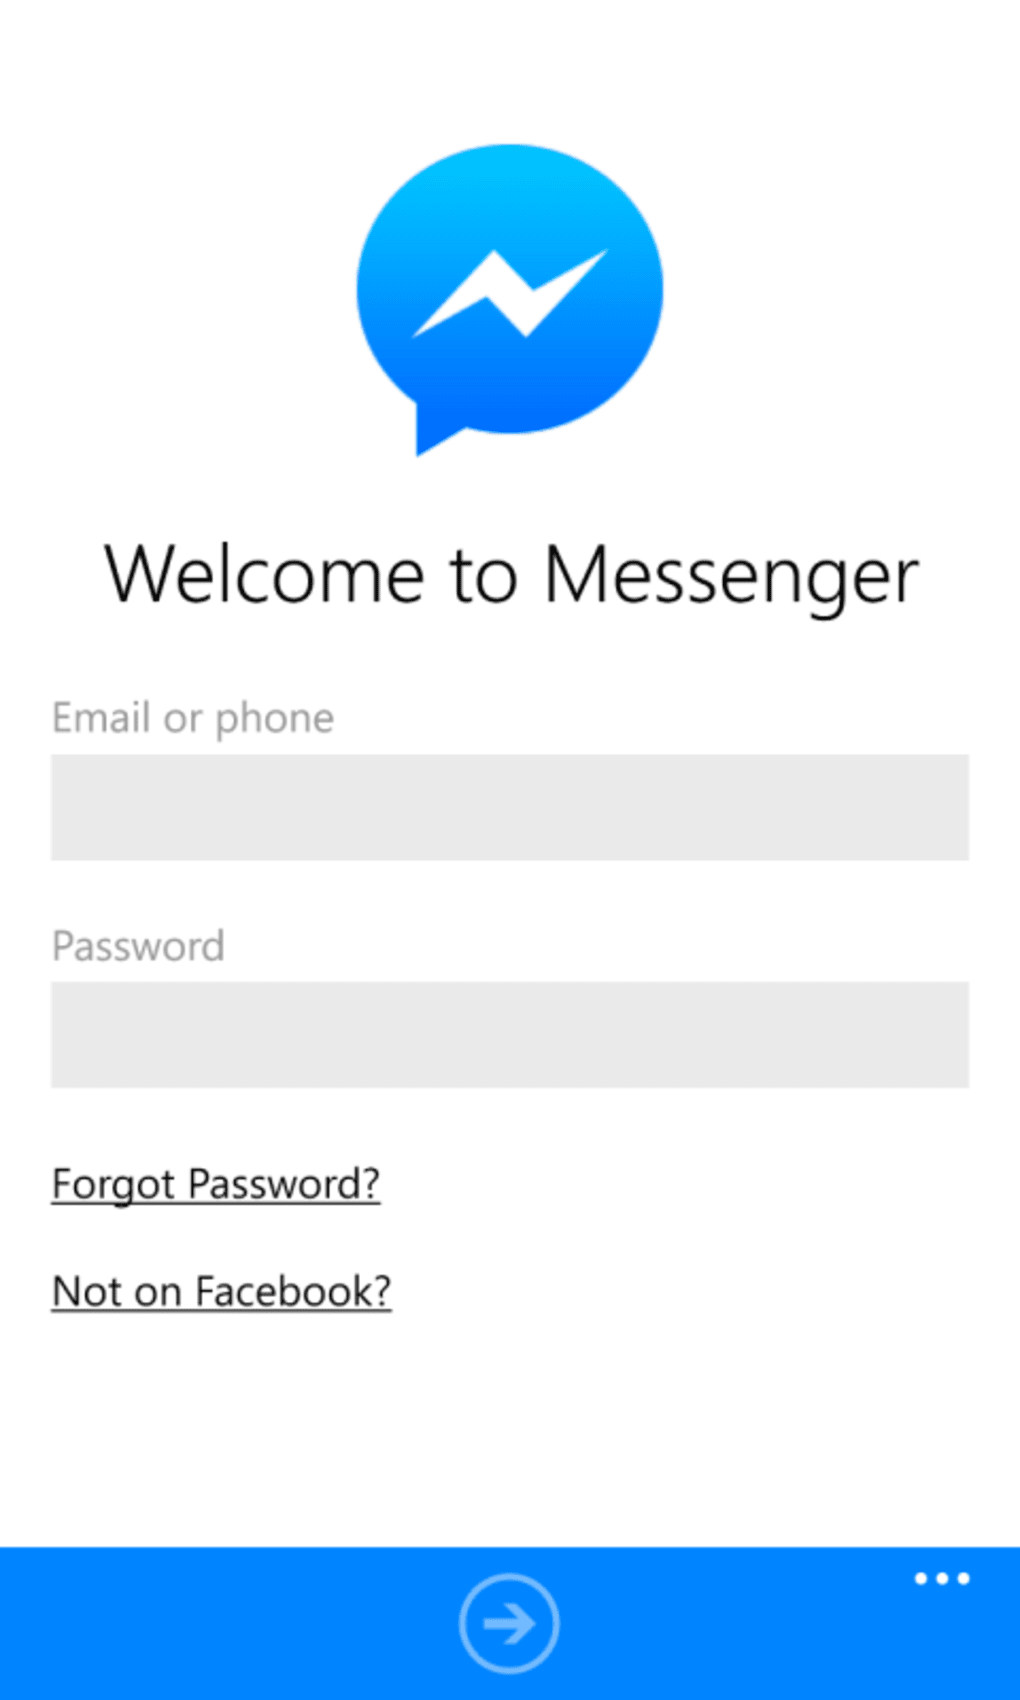 facebook messenger app download